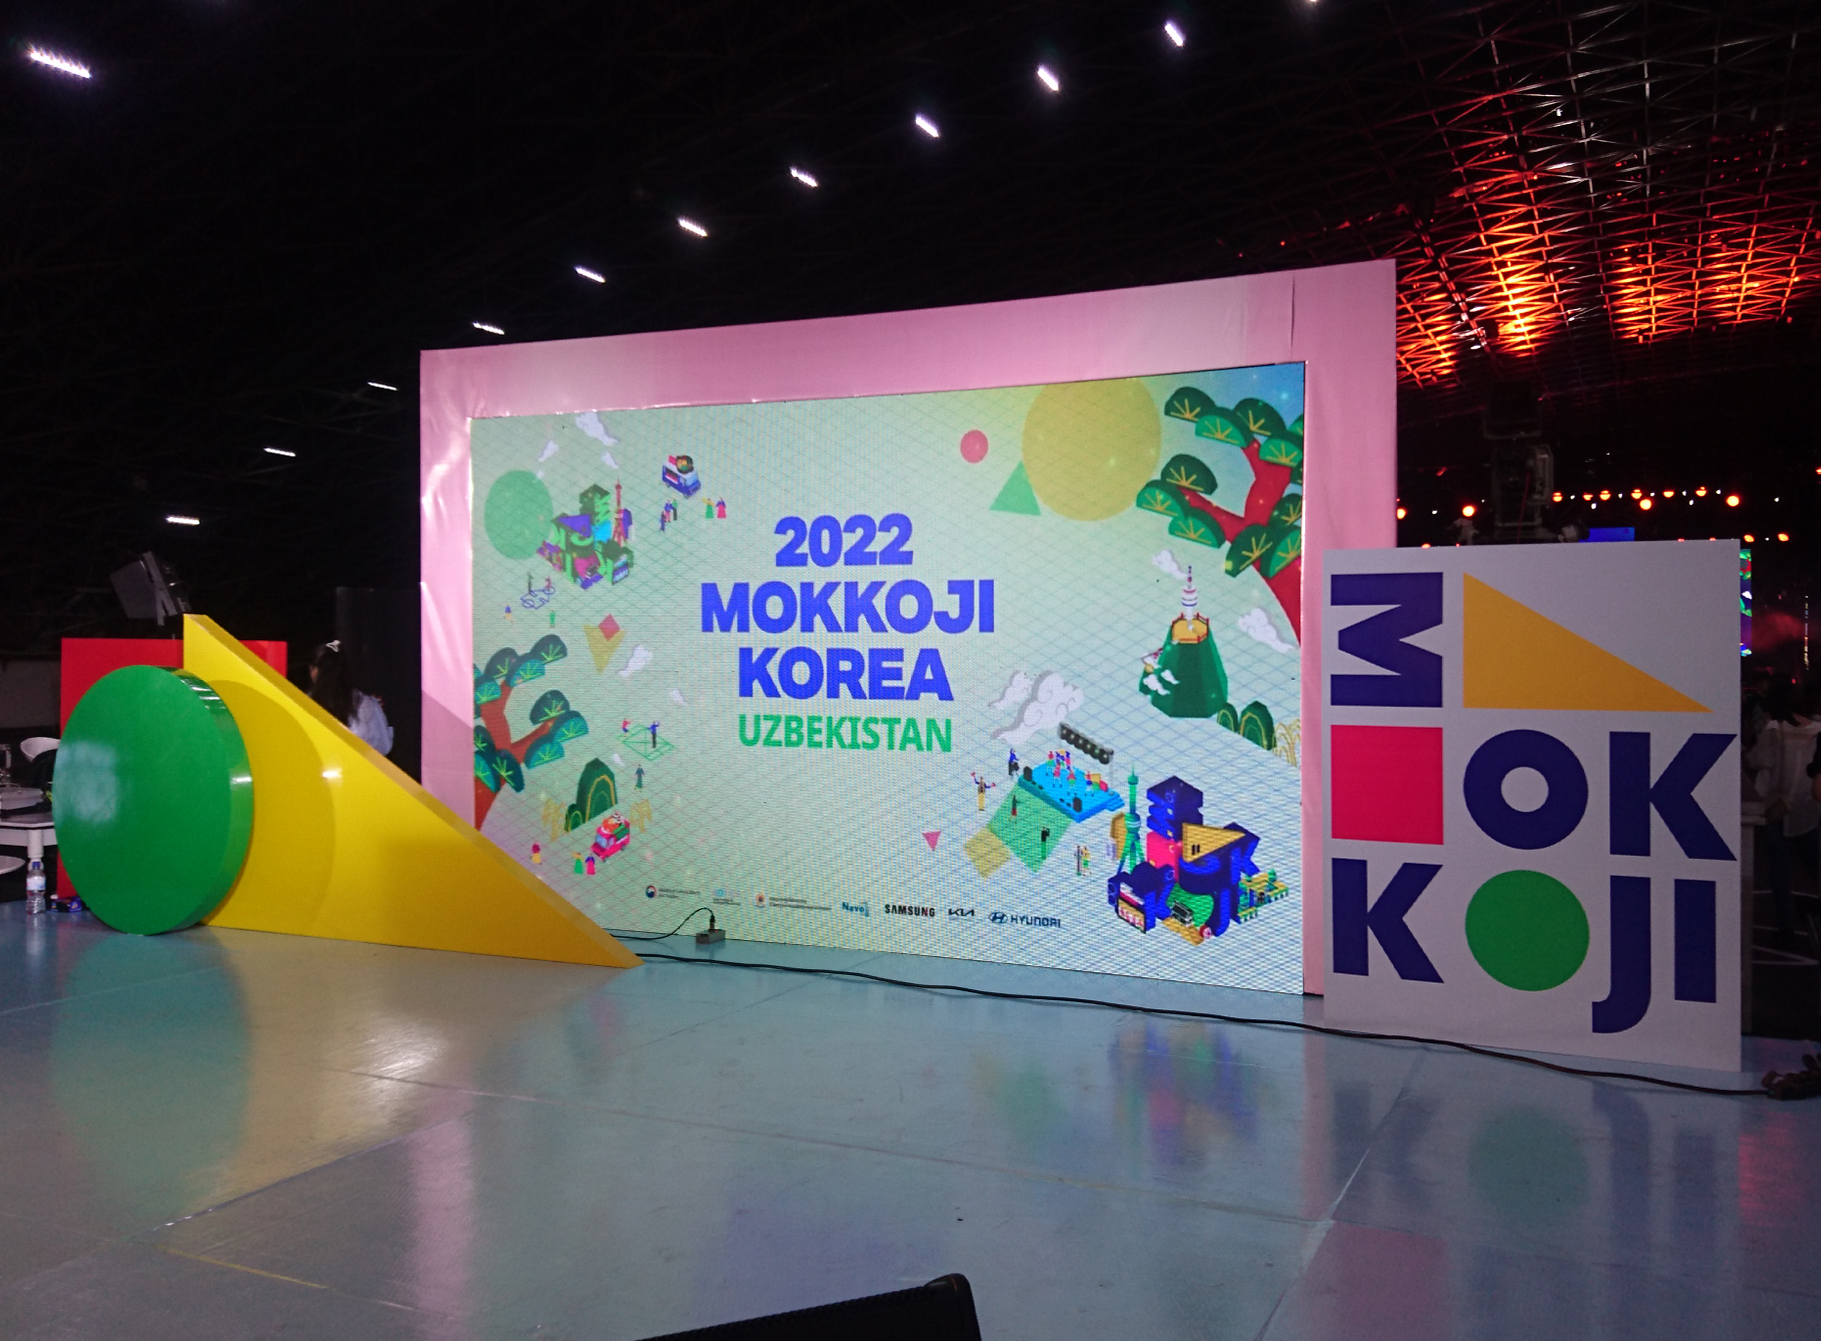 MOKKOJI KOREA 2022